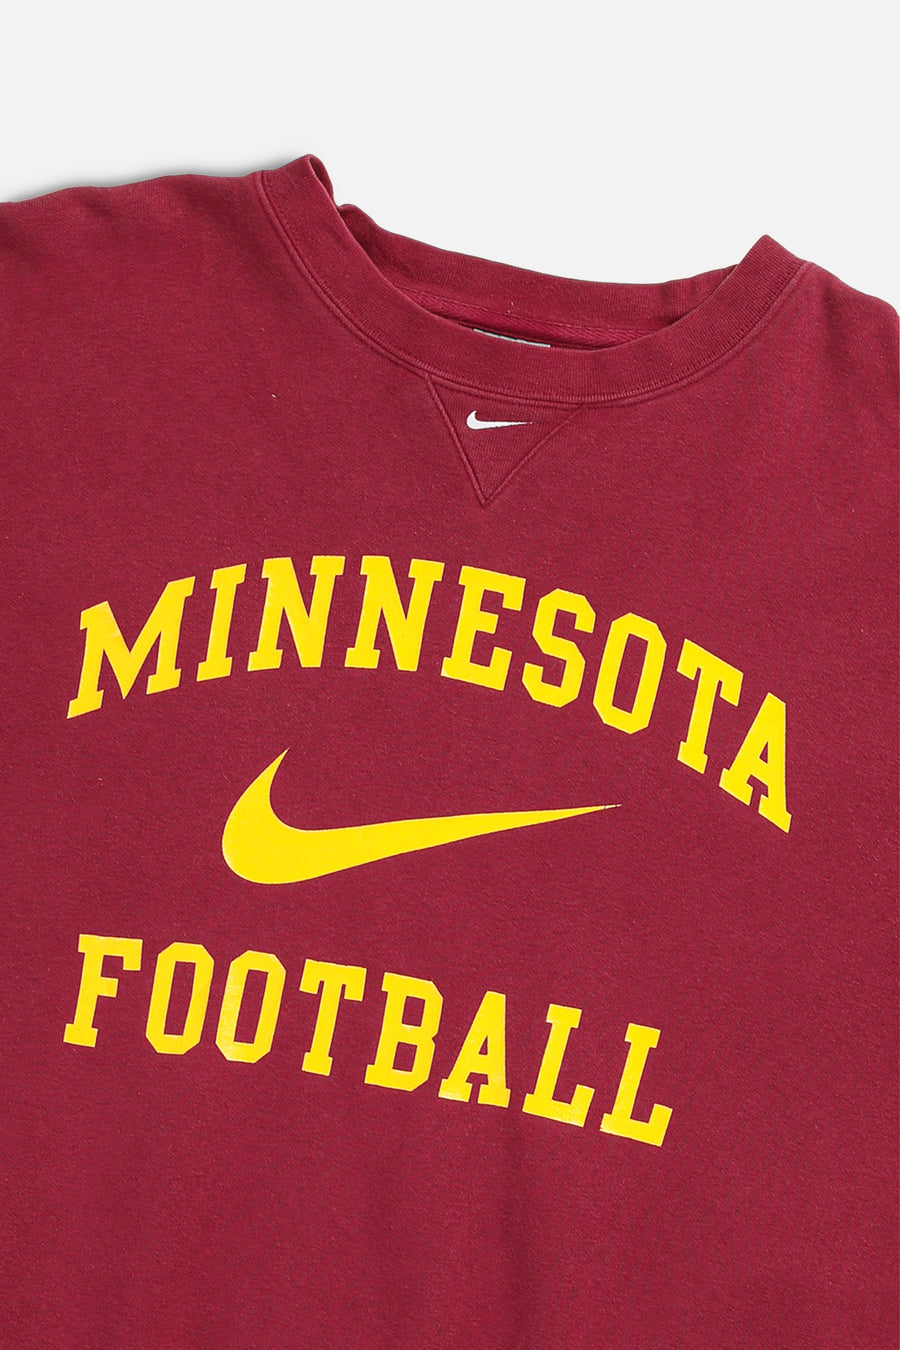 Vintage Nike Minnesota Football Sweatshirt - XL